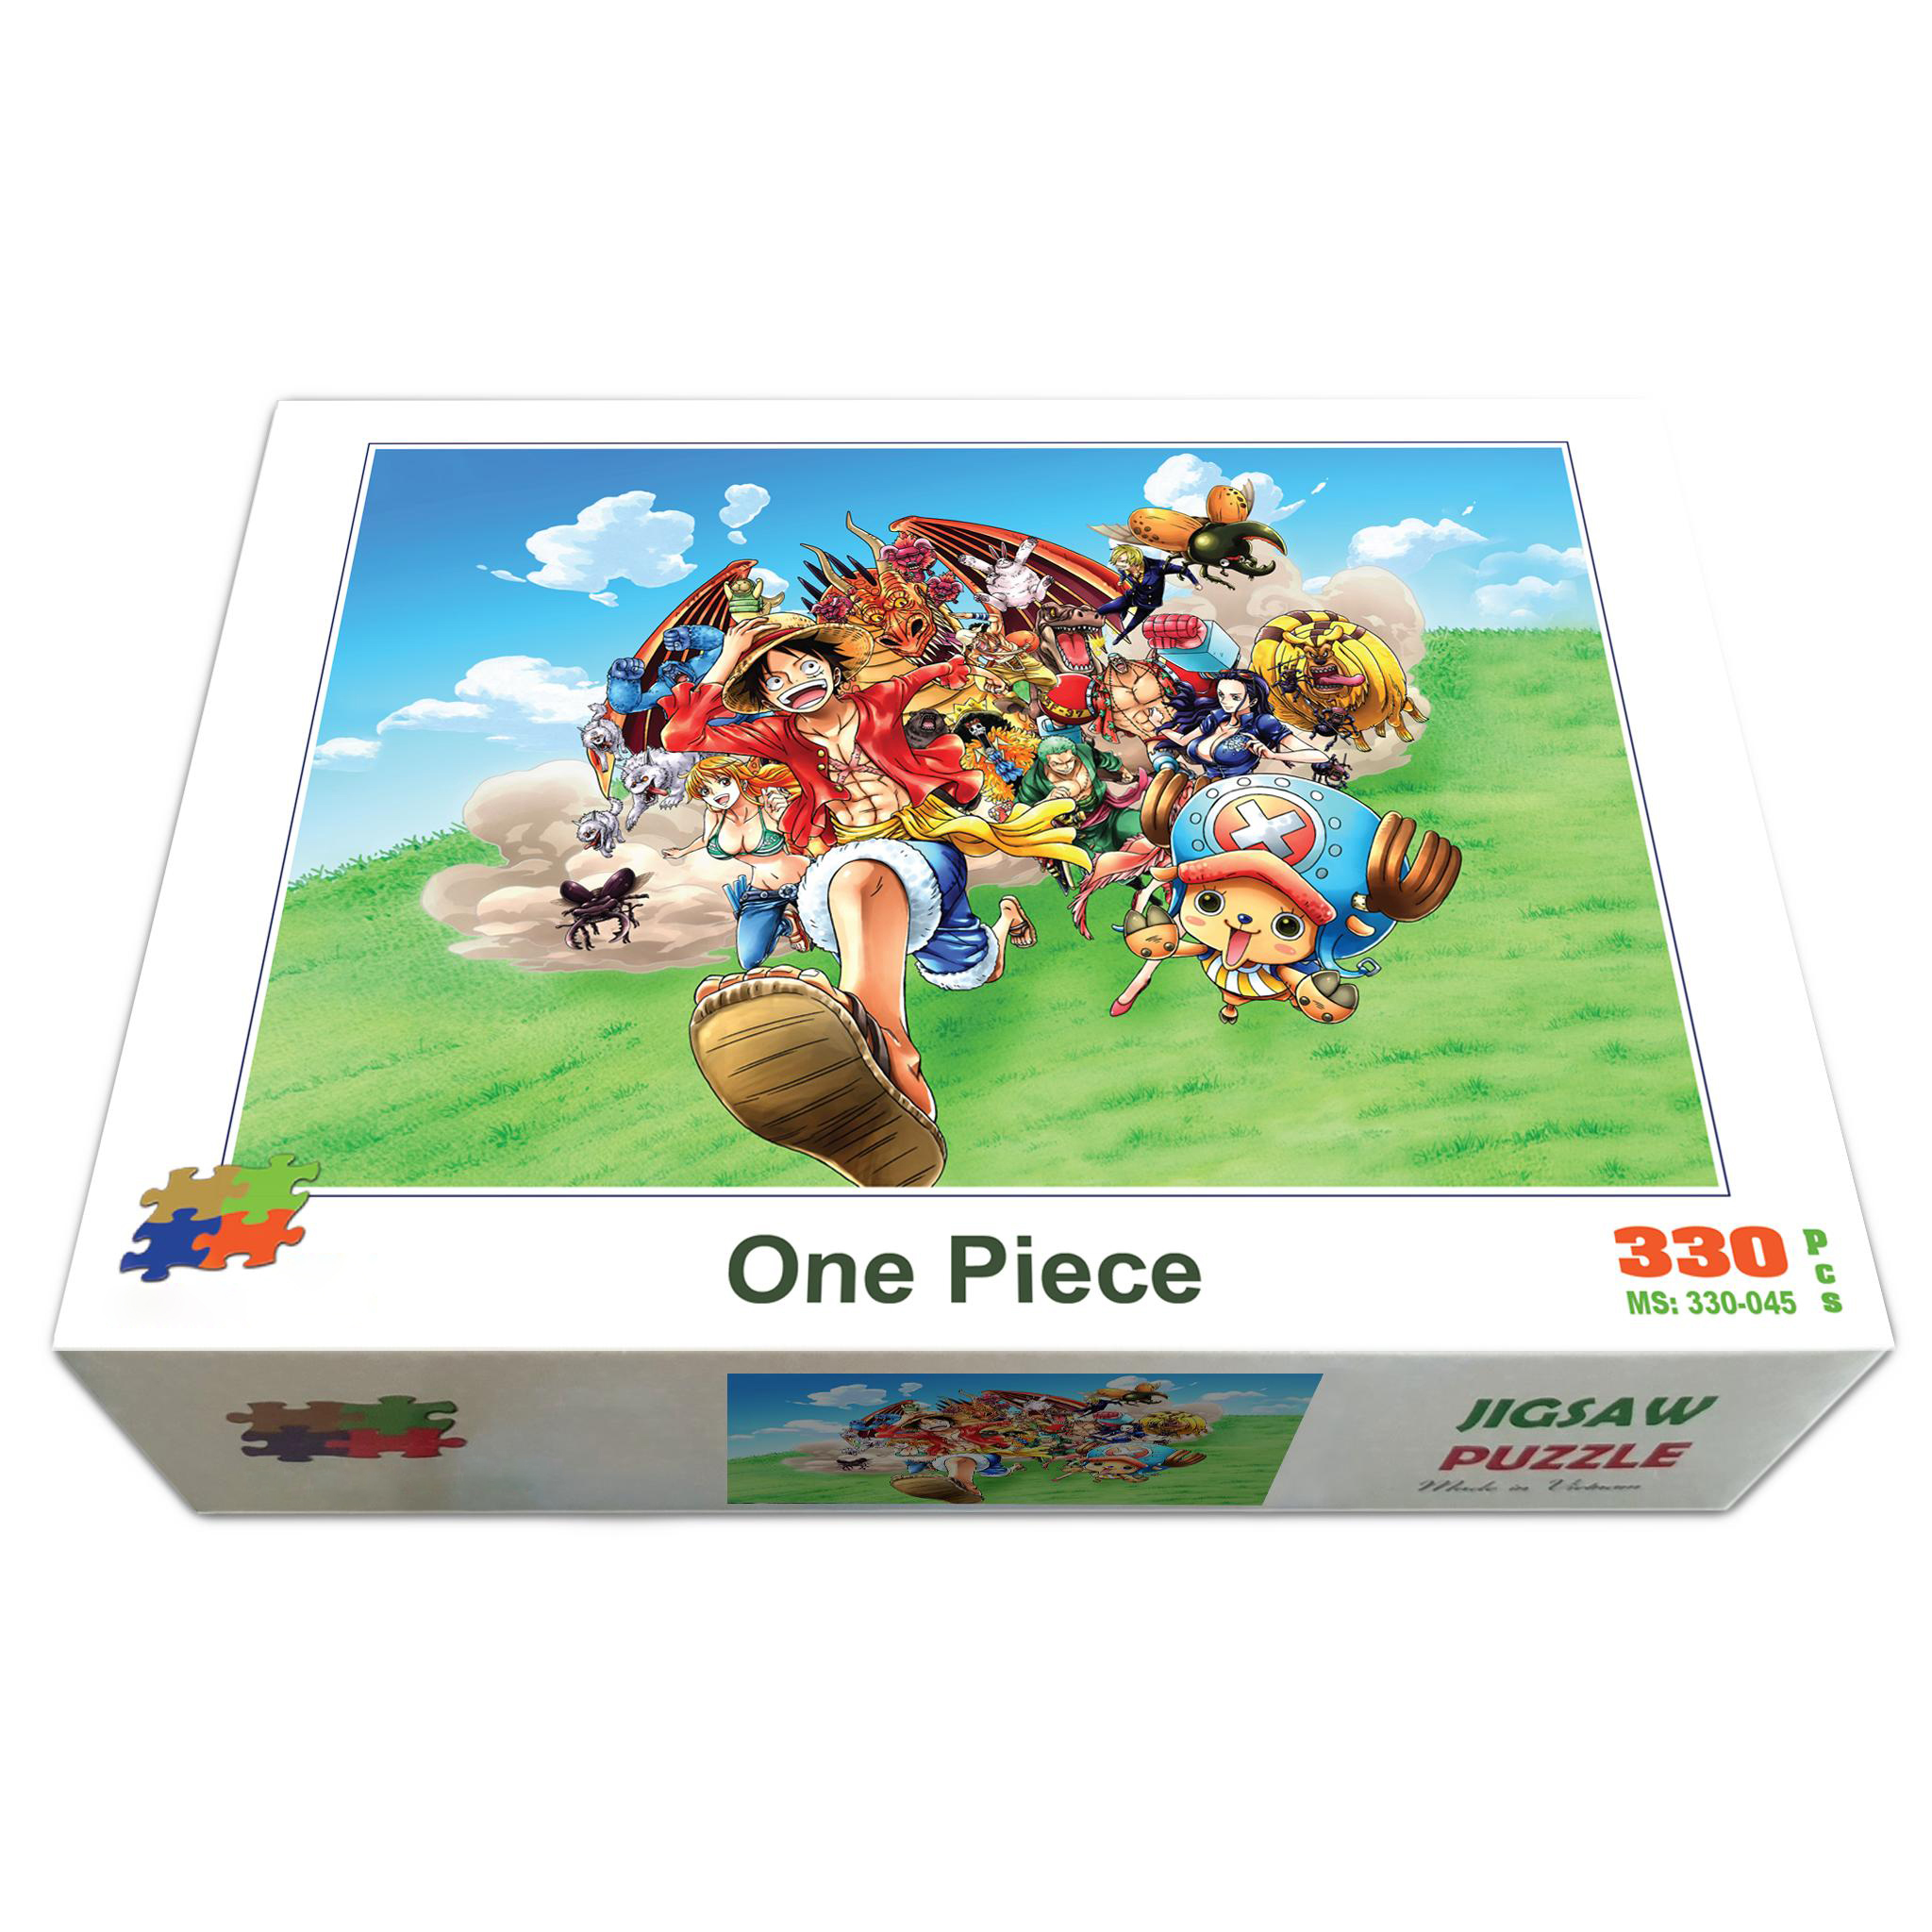 Bộ tranh xếp hình jigsaw puzzle cao cấp 330 mảnh – One Piece